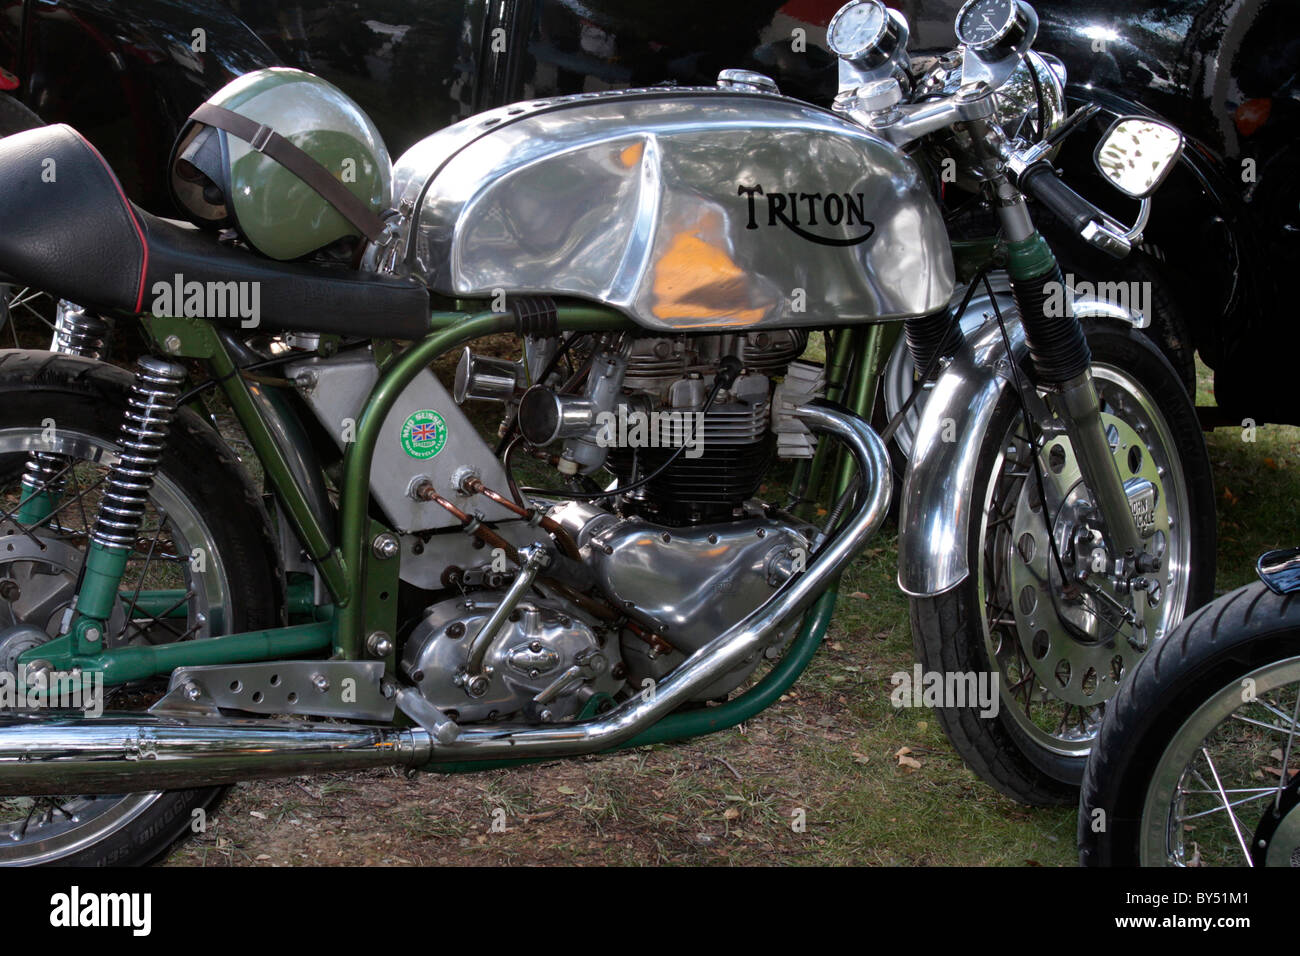 Le Triton est une version modifiée de la moto café racer des années 60 des  années 70. Le nom provient d'une contraction de Triumph et Norton Photo  Stock - Alamy